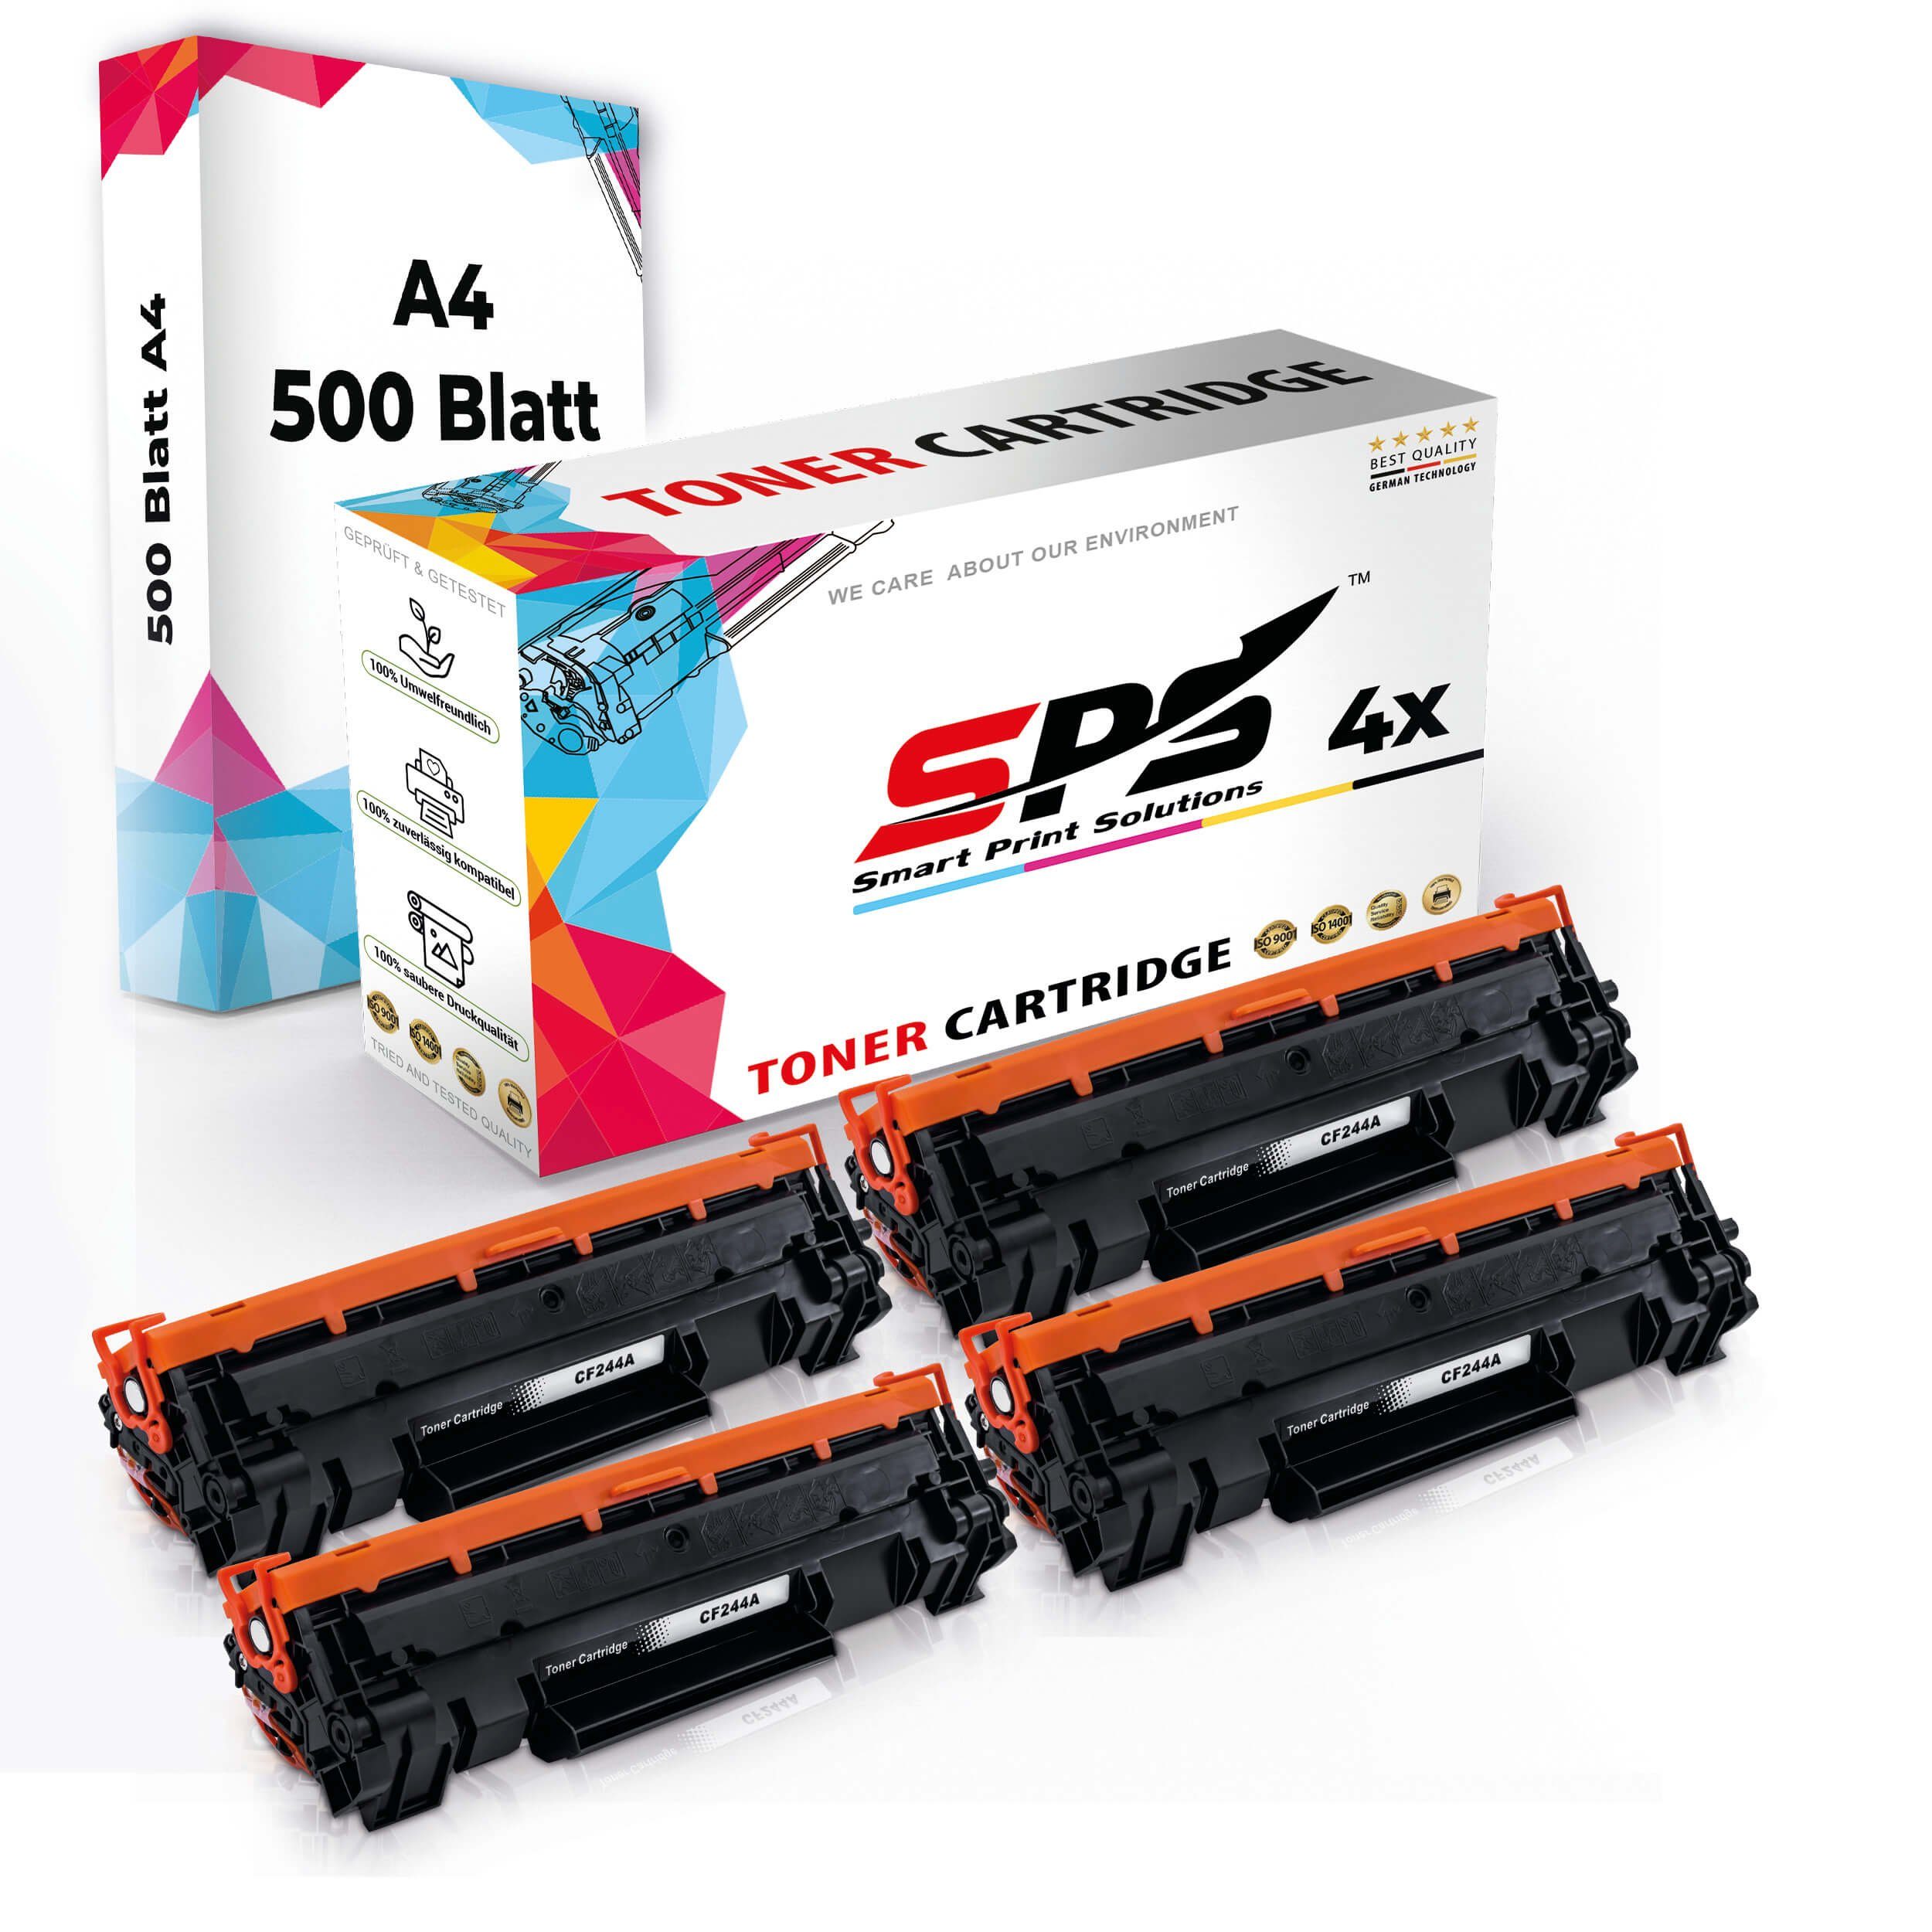 Druckerpapier) SPS 4x Multipack (4er Druckerpapier Kompatibel, + A4 Toner,1x A4 Set Tonerkartusche Pack, 4x